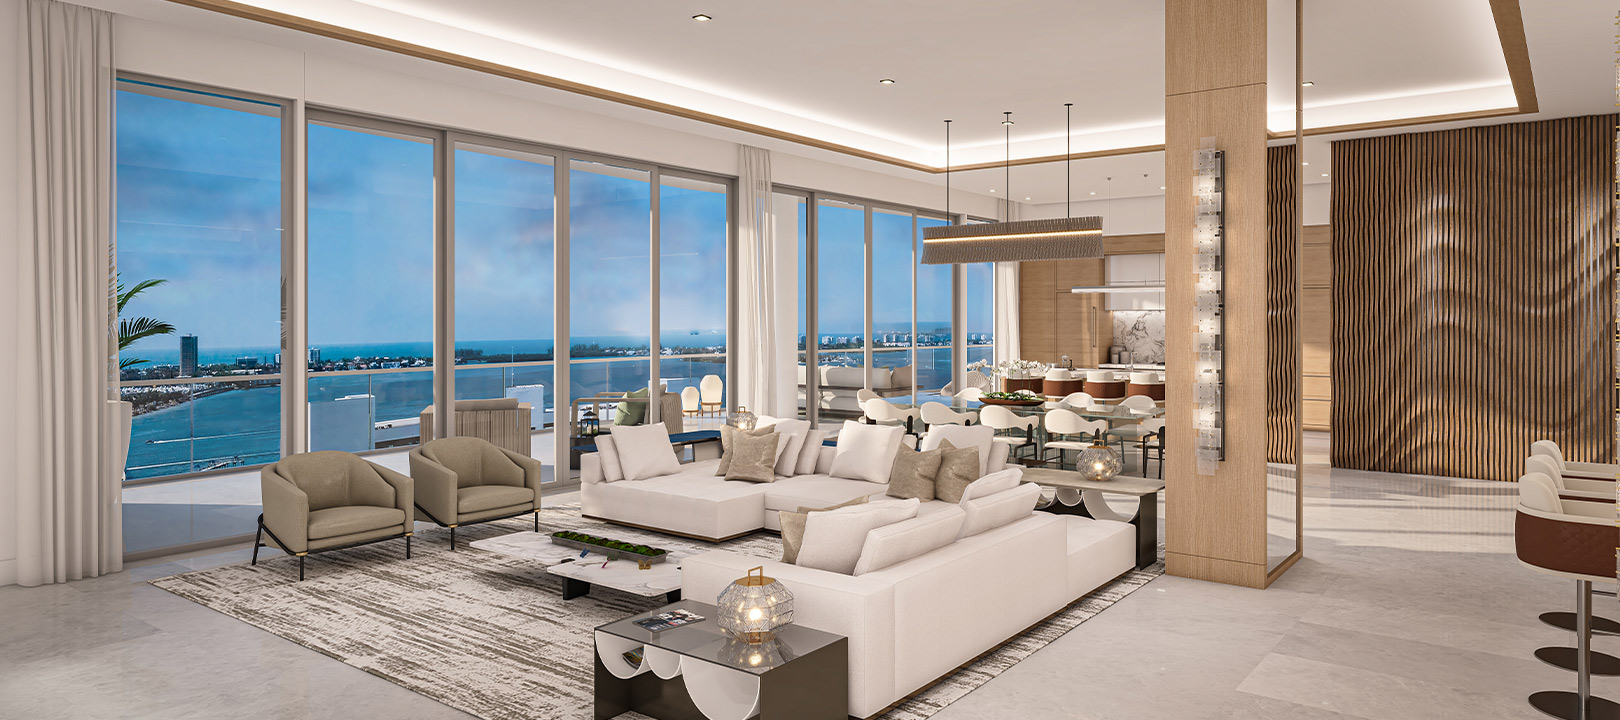 interior penthouse g rendering at The Ritz-Carlton Residences Sarasota Bay